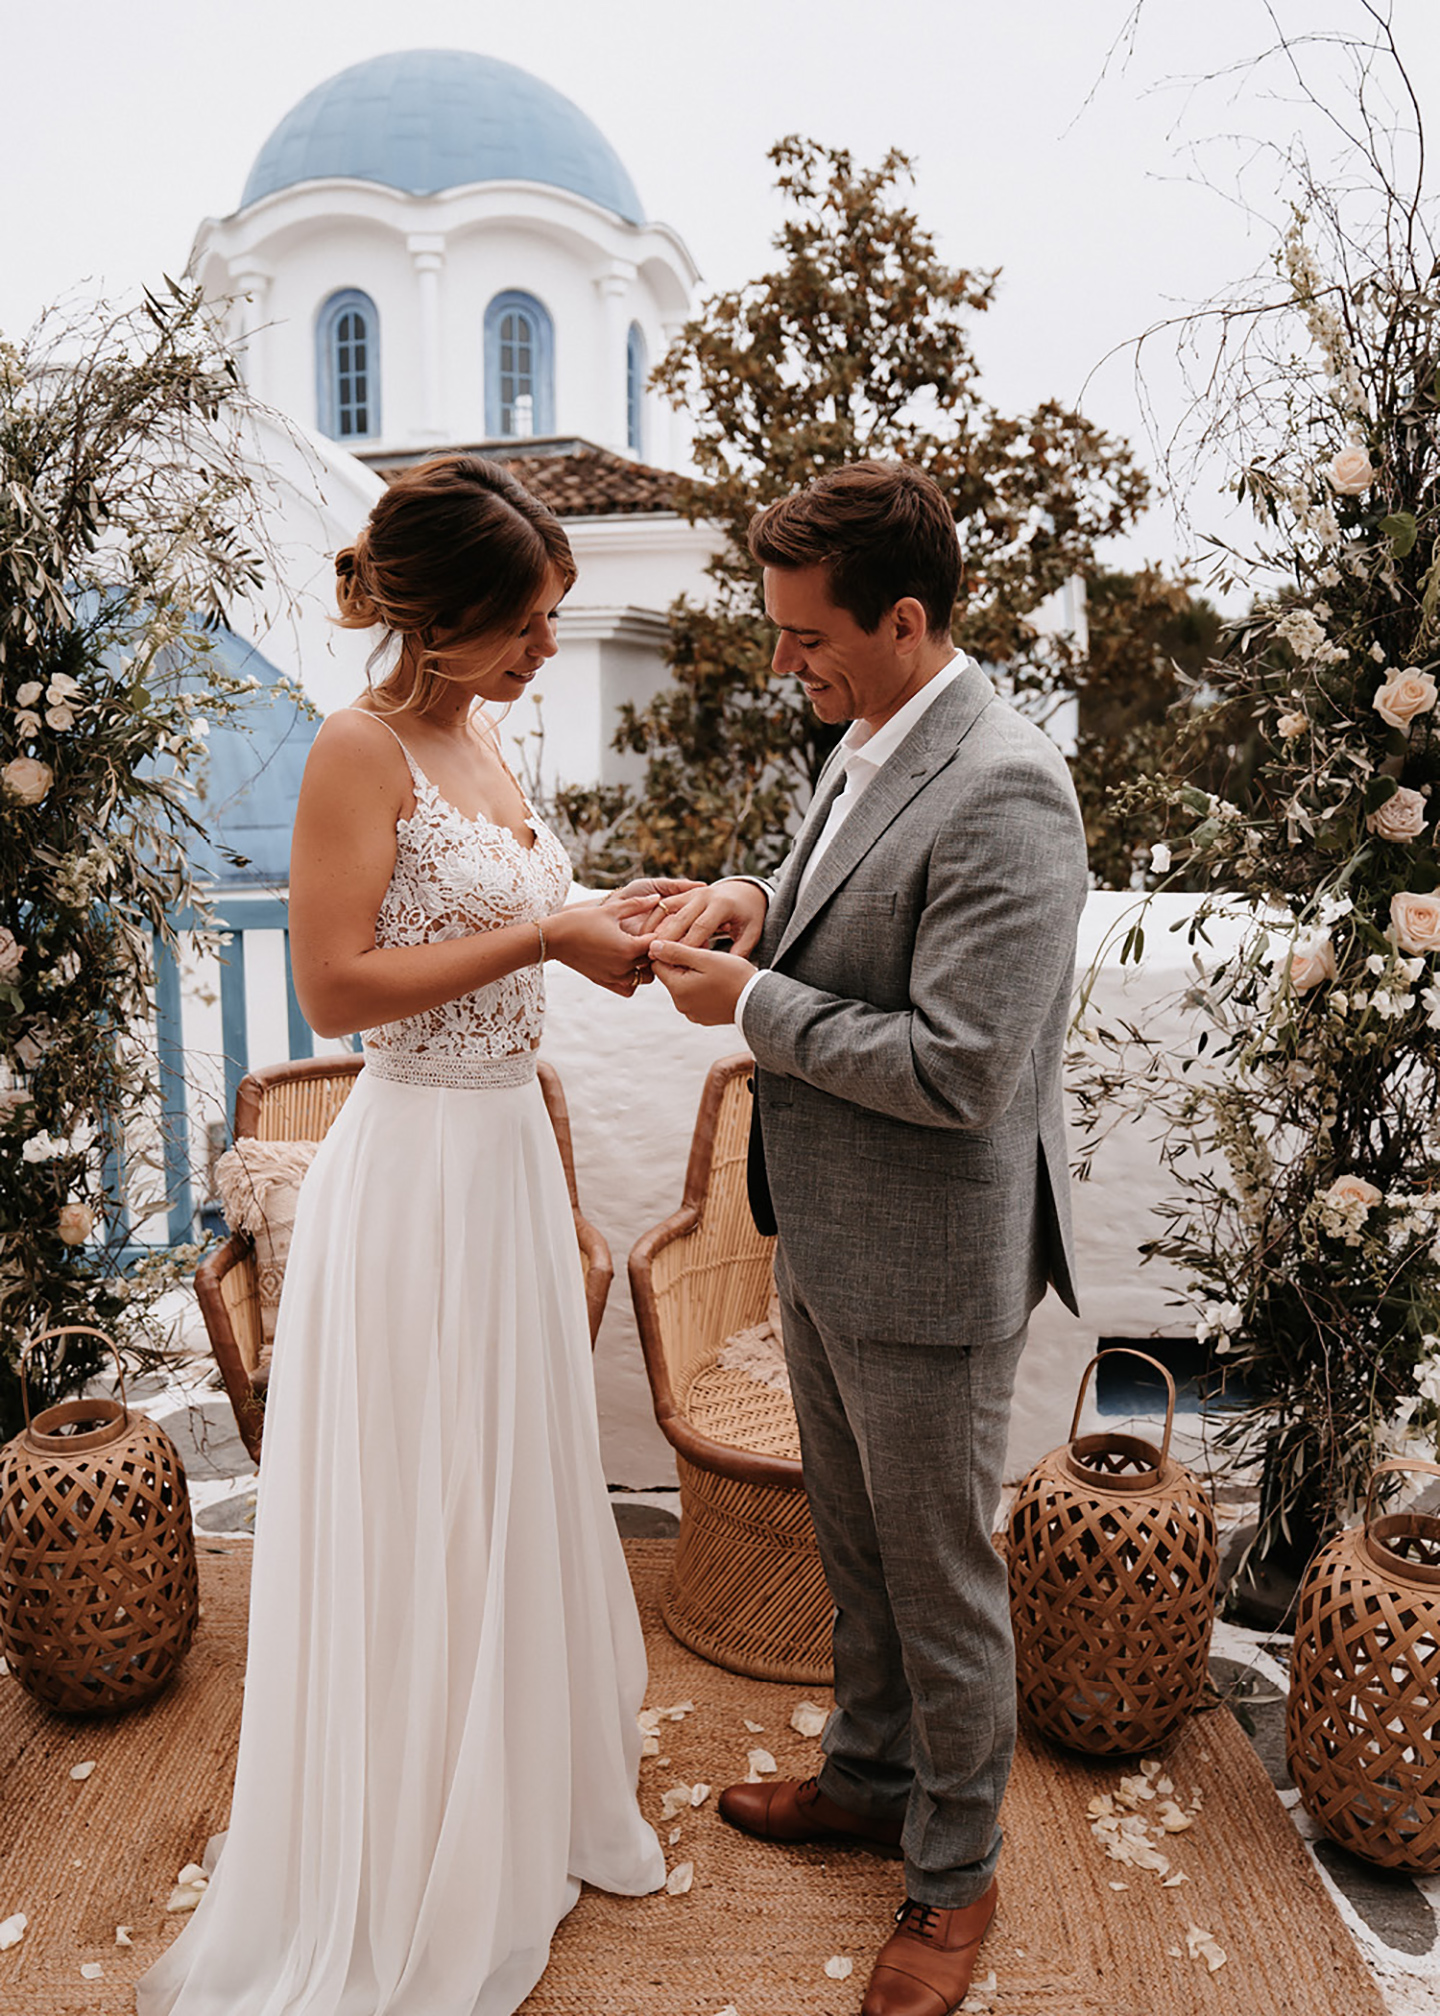 Vor dem Anblick einer griechischen Kapelle mit blauem Dach und geschmückter Atmosphäre steckt die Braut dem Bräutigam den Ehering an den Finger. 